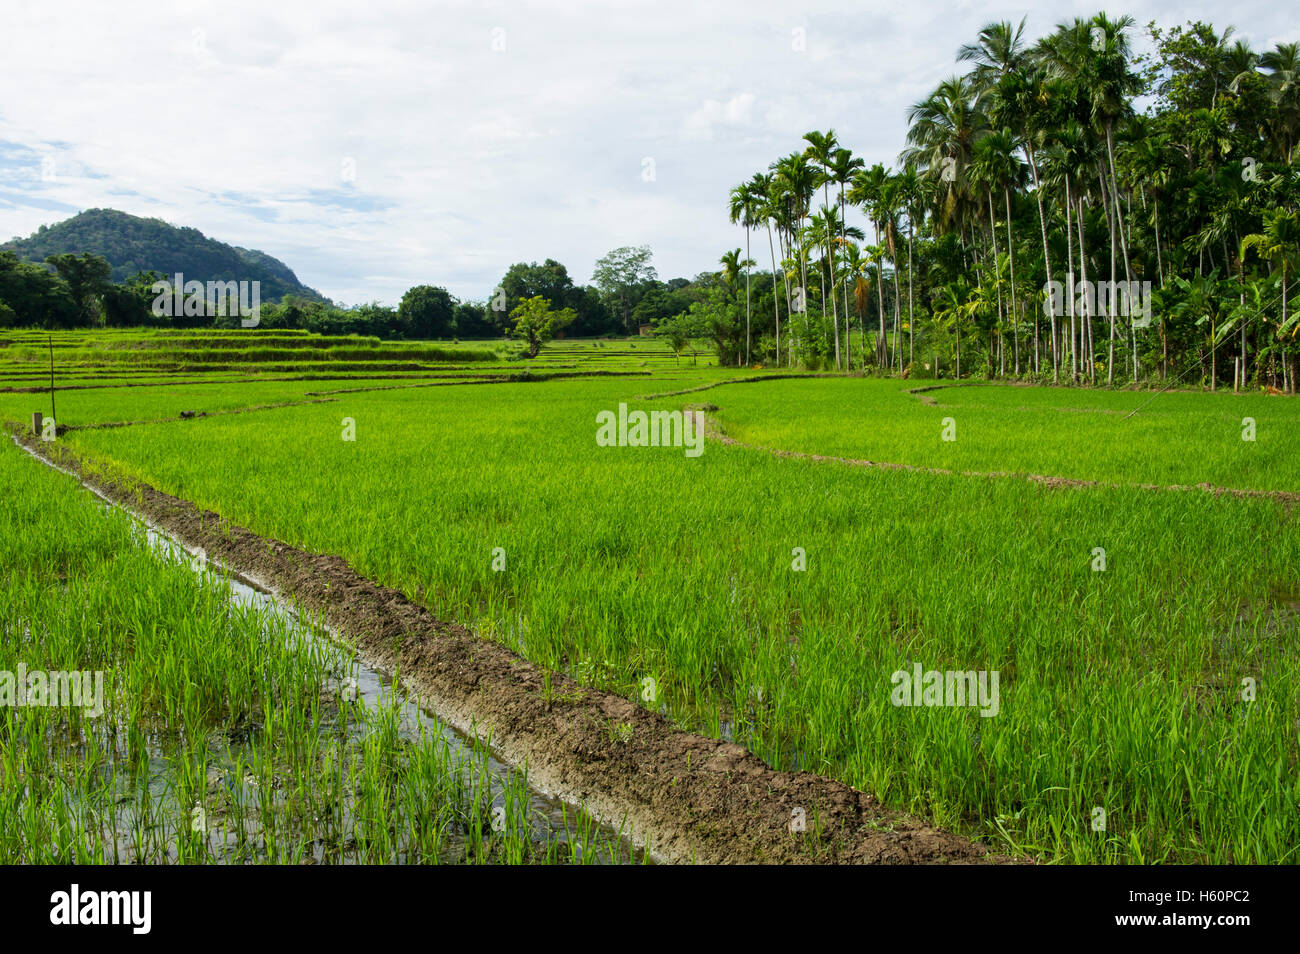 Los arrozales, Wellawaya, Sri Lanka Foto de stock